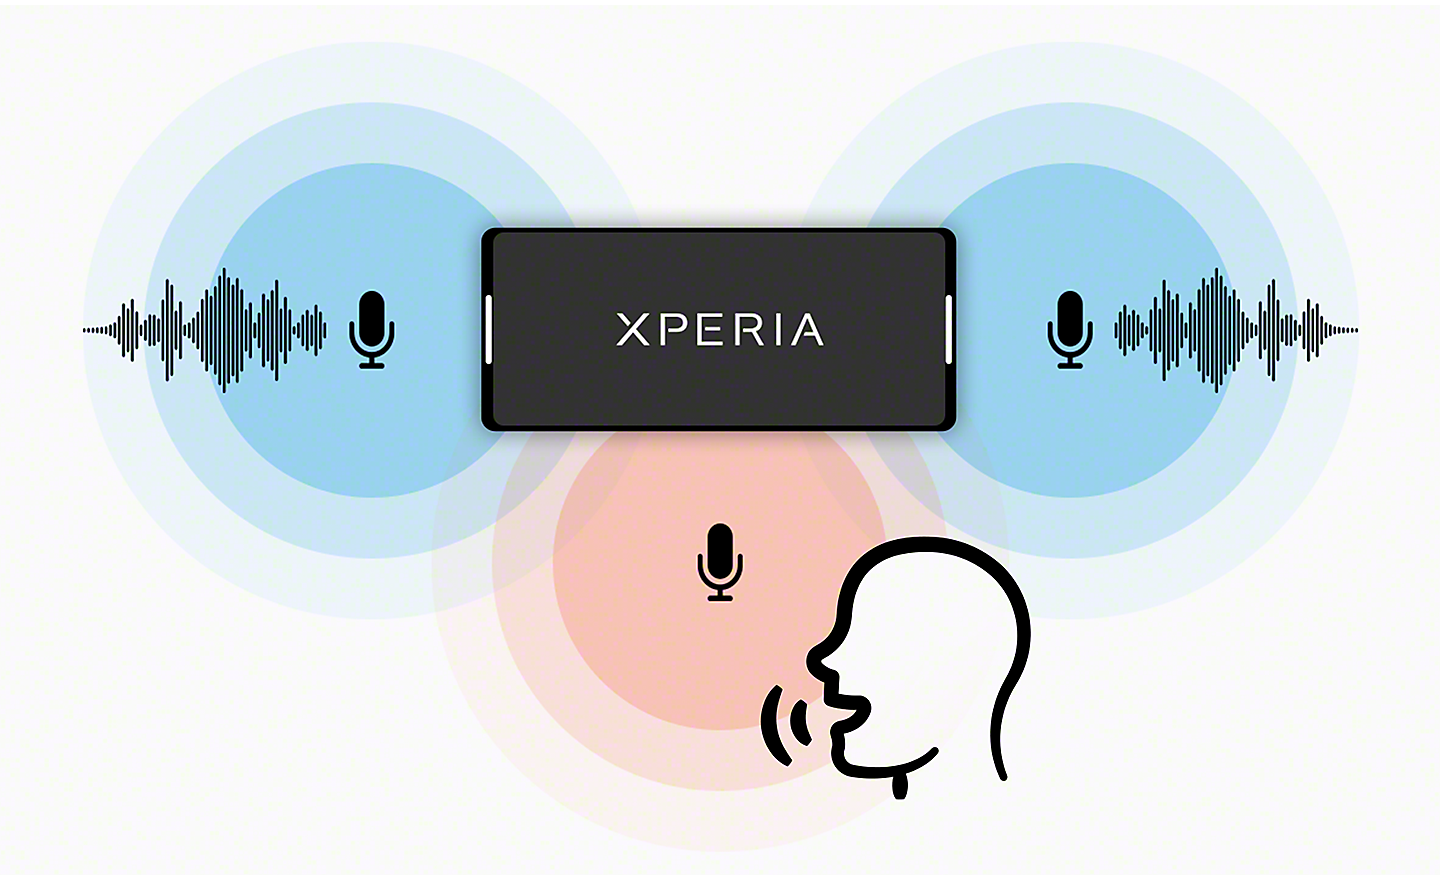 Ilustrație care prezintă dispozitivul Xperia cu microfoane stereo, plus un microfon mono care înregistrează vocea